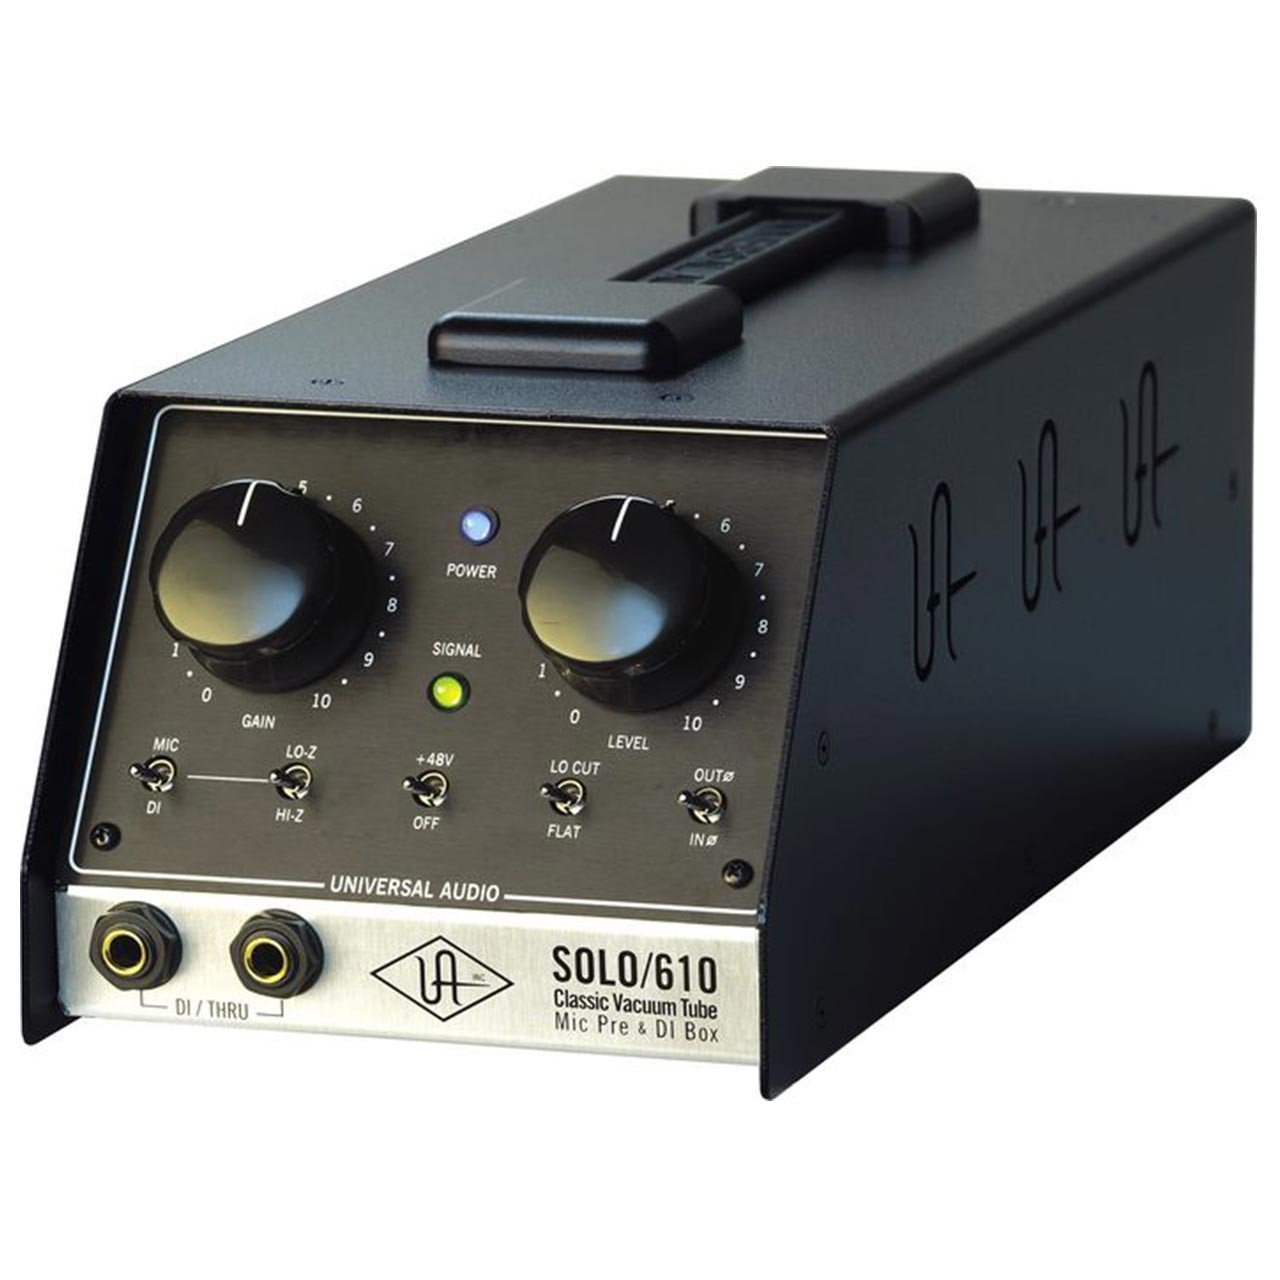 Preamps/Channel Strips - Universal Audio SOLO/610 Classic Vacuum Tube Mic Pre & DI Box